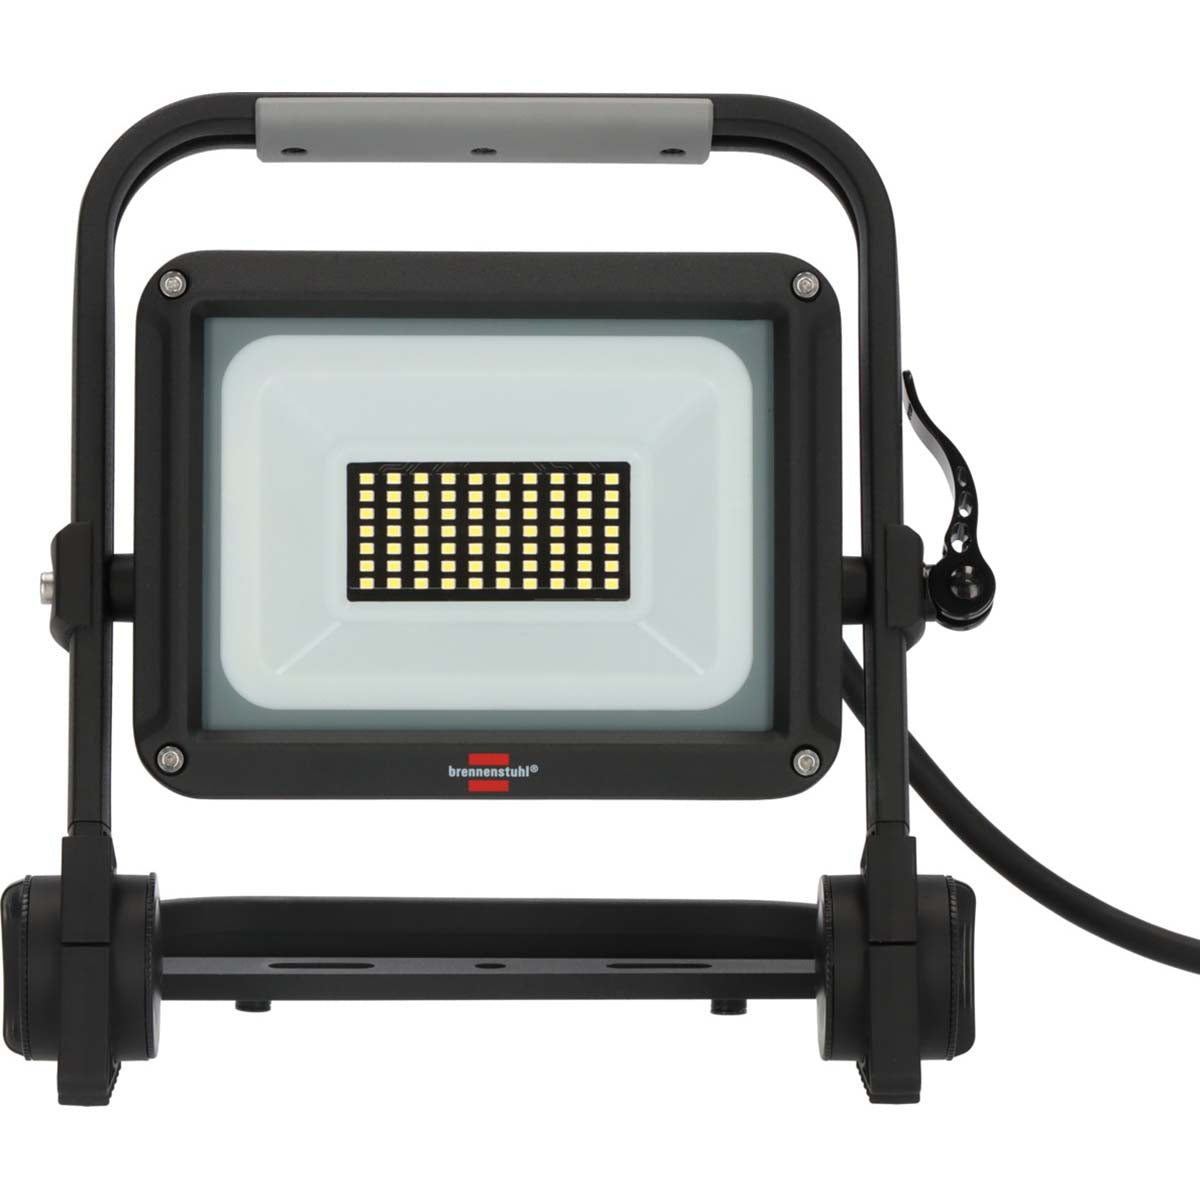 Mobile LED-Bauleuchte JARO 4060 M / LED-Notbeleuchtung für außen 30W (Arbeitsleuchte mit 3m Kabel und Schnellspanner, LED-Fluter IP65, 3450lm)